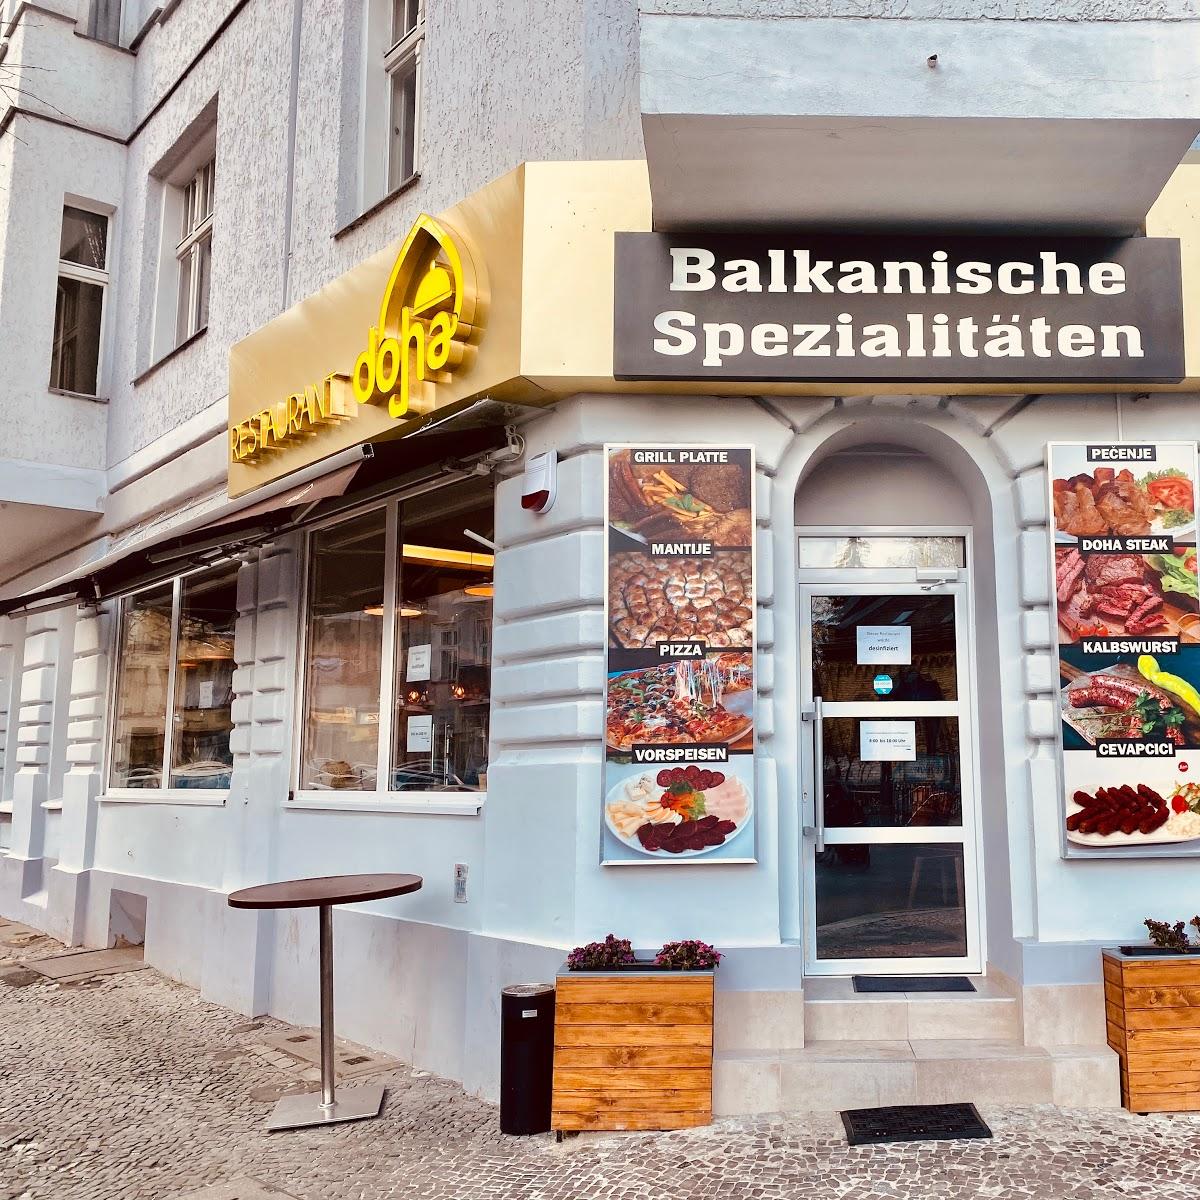 Restaurant "Restaurant DOHA Berlin" in Berlin